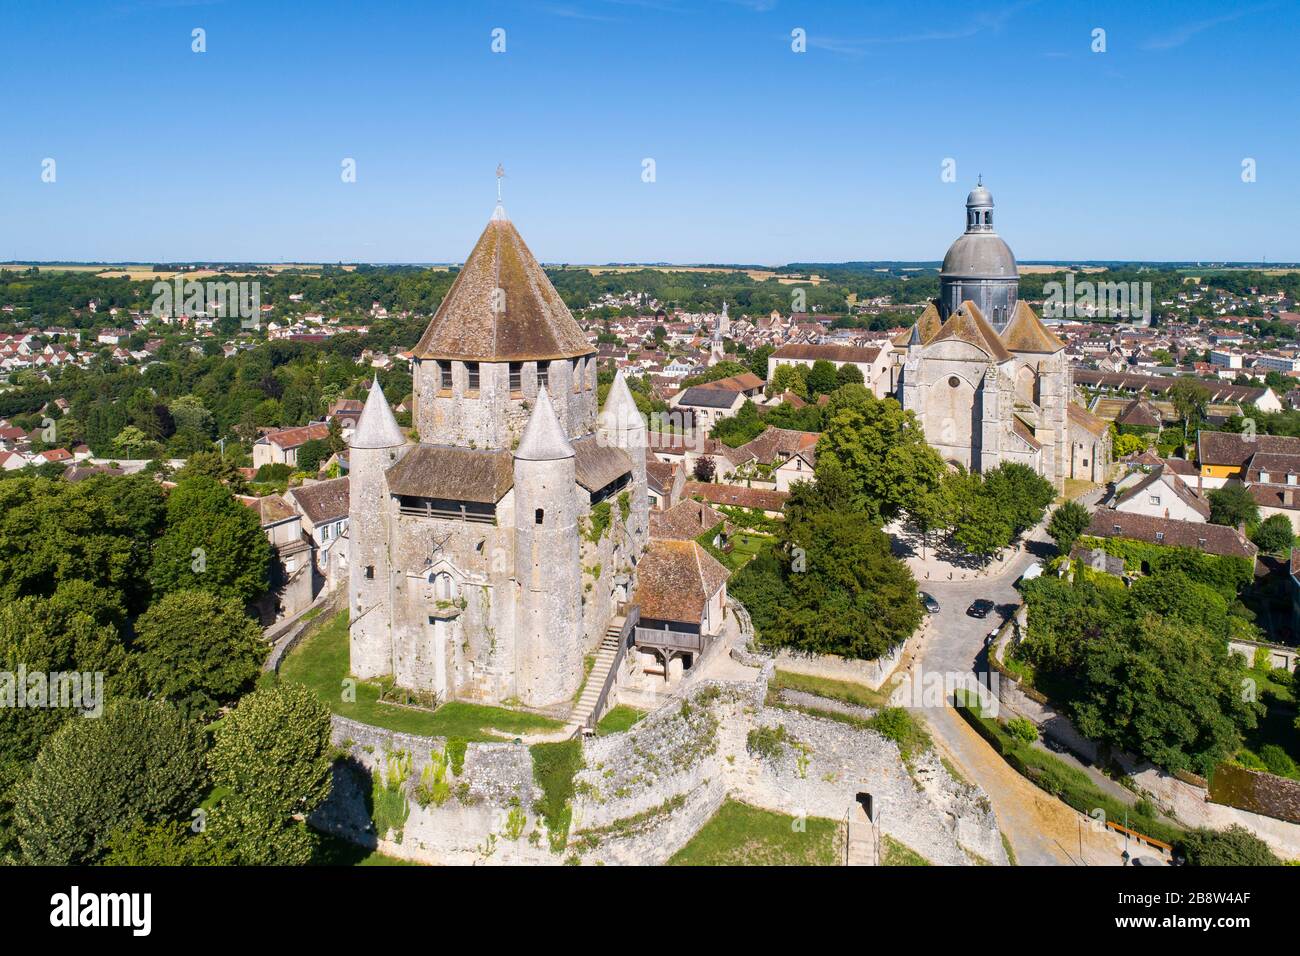 Vue aérienne de Provins, village médiéval classé au patrimoine mondial par l'unesco Banque D'Images